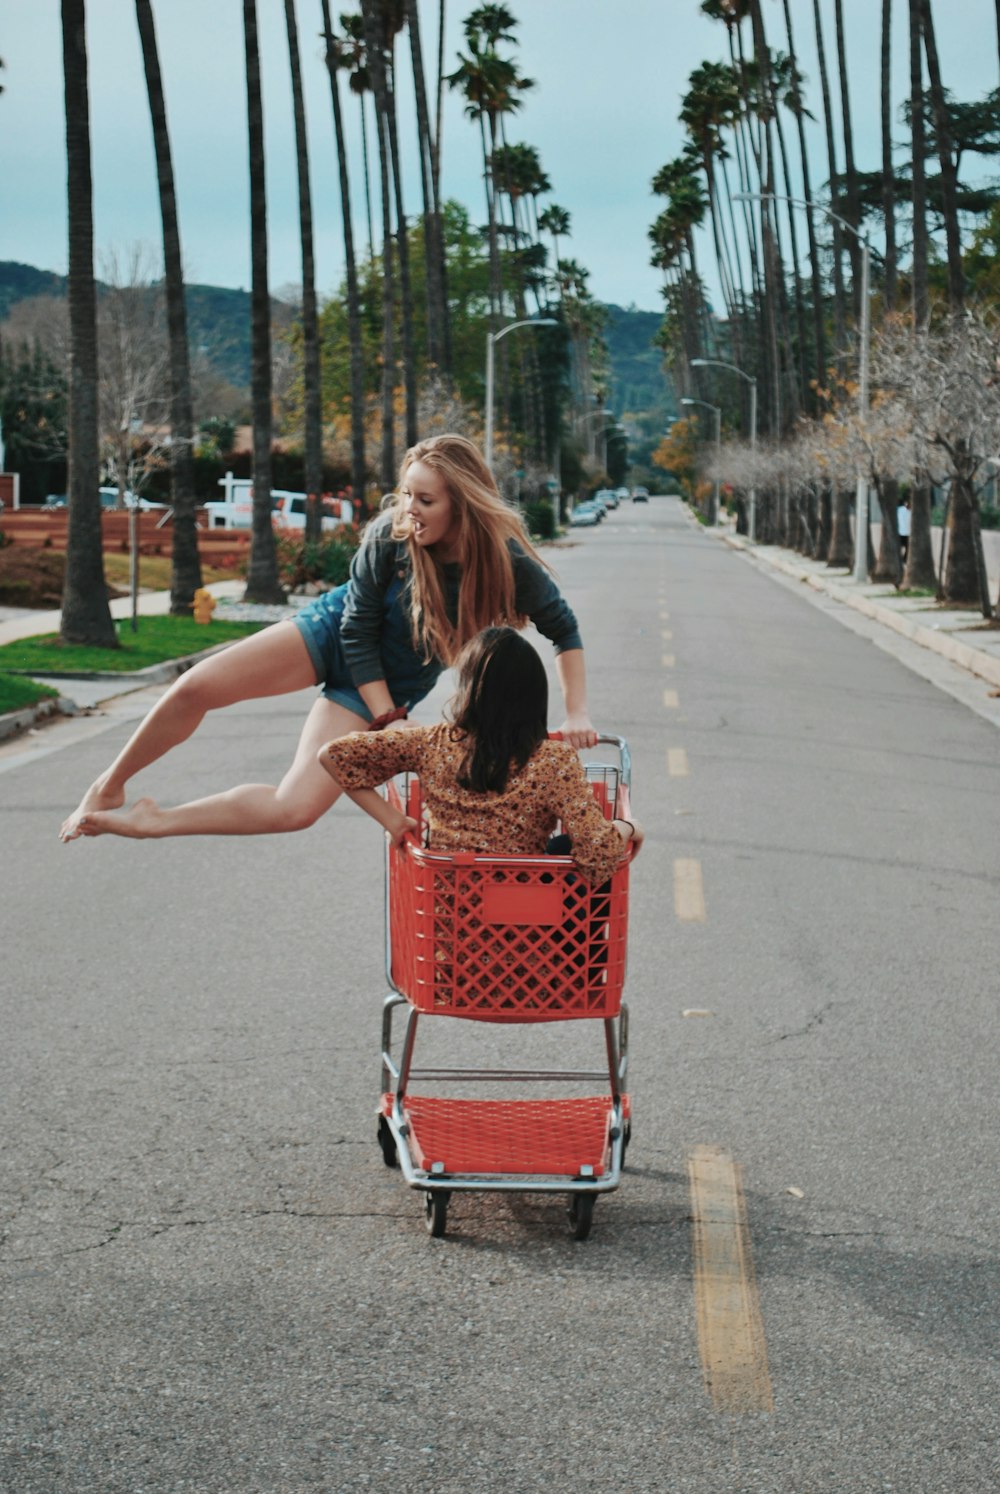 two women playing the shopping cart